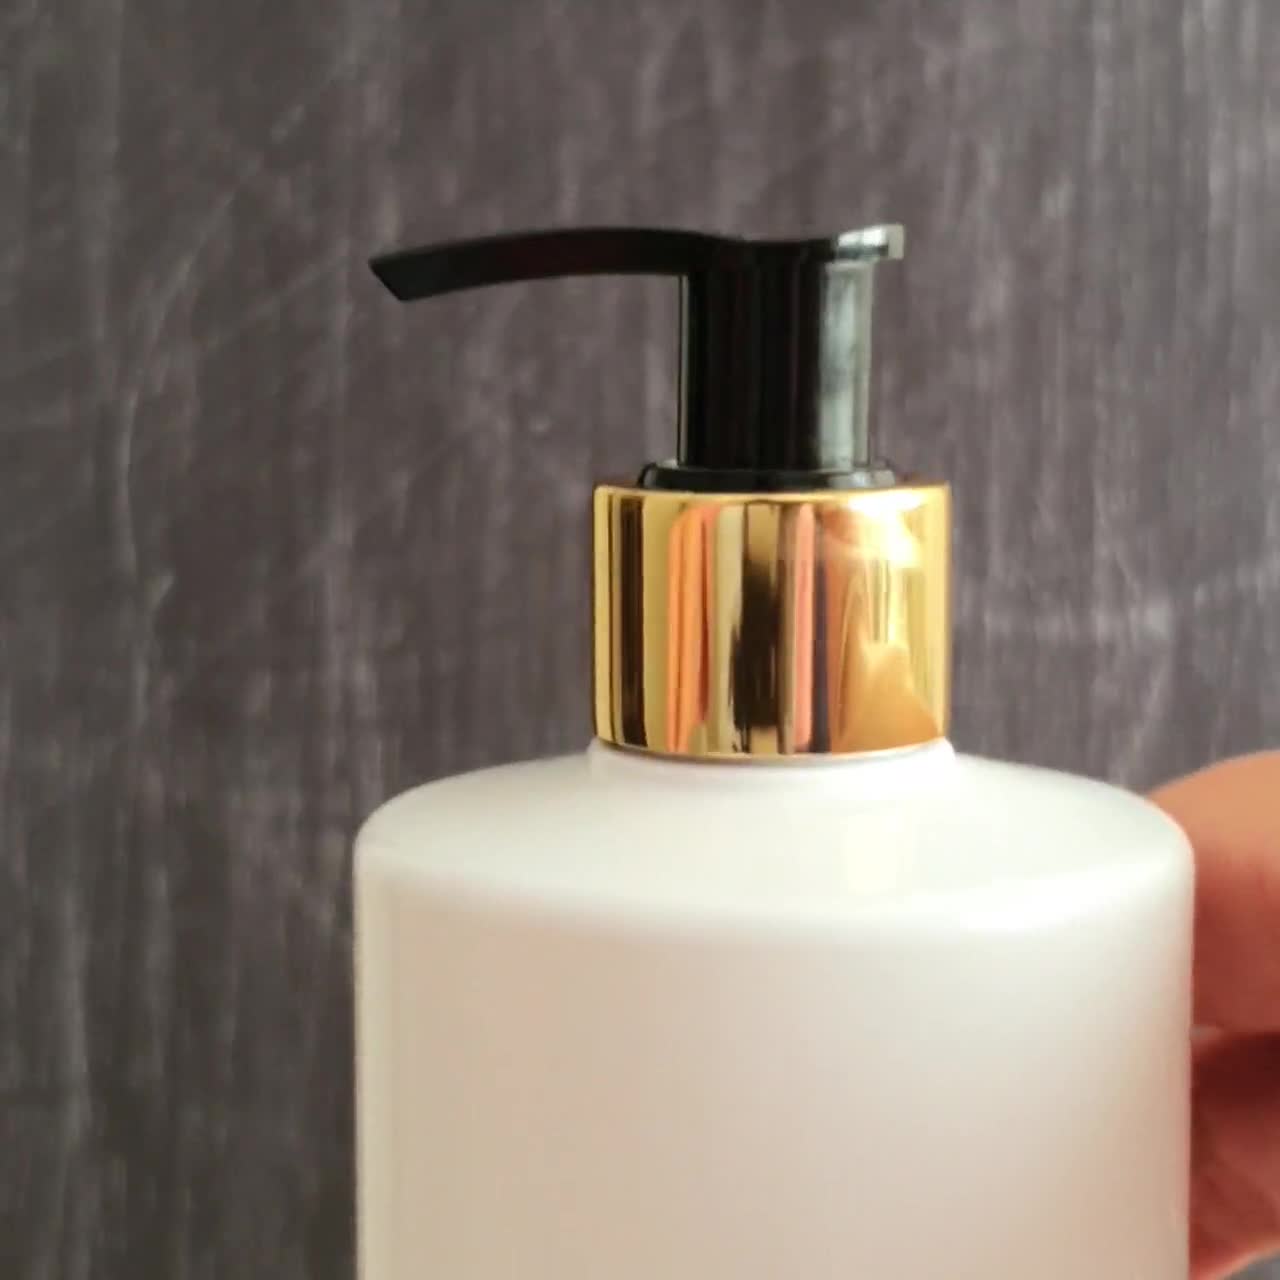 Bouteille de shampoing à pompe vide Bouteille de lotion pour les mains  élégante 500 ml Récipients de bouteille de pompe rechargeables pour vanité  MAINS blanches